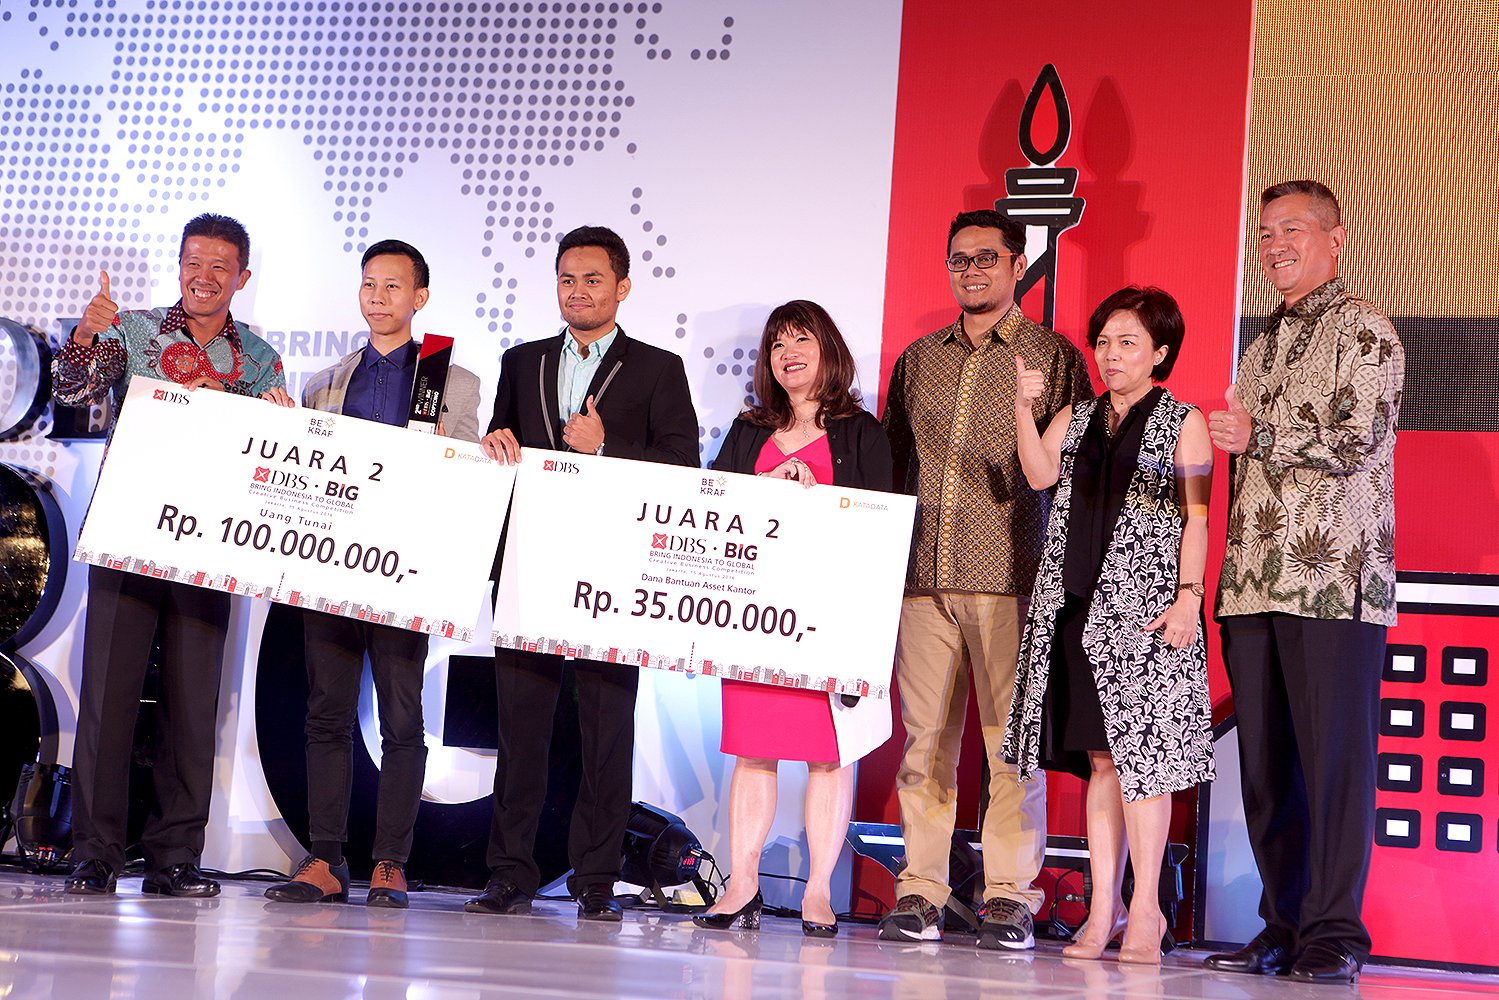 Peserta dari DKI Jakarta dengan usaha print gratis menjadi juara kedua DBS Big 2016.